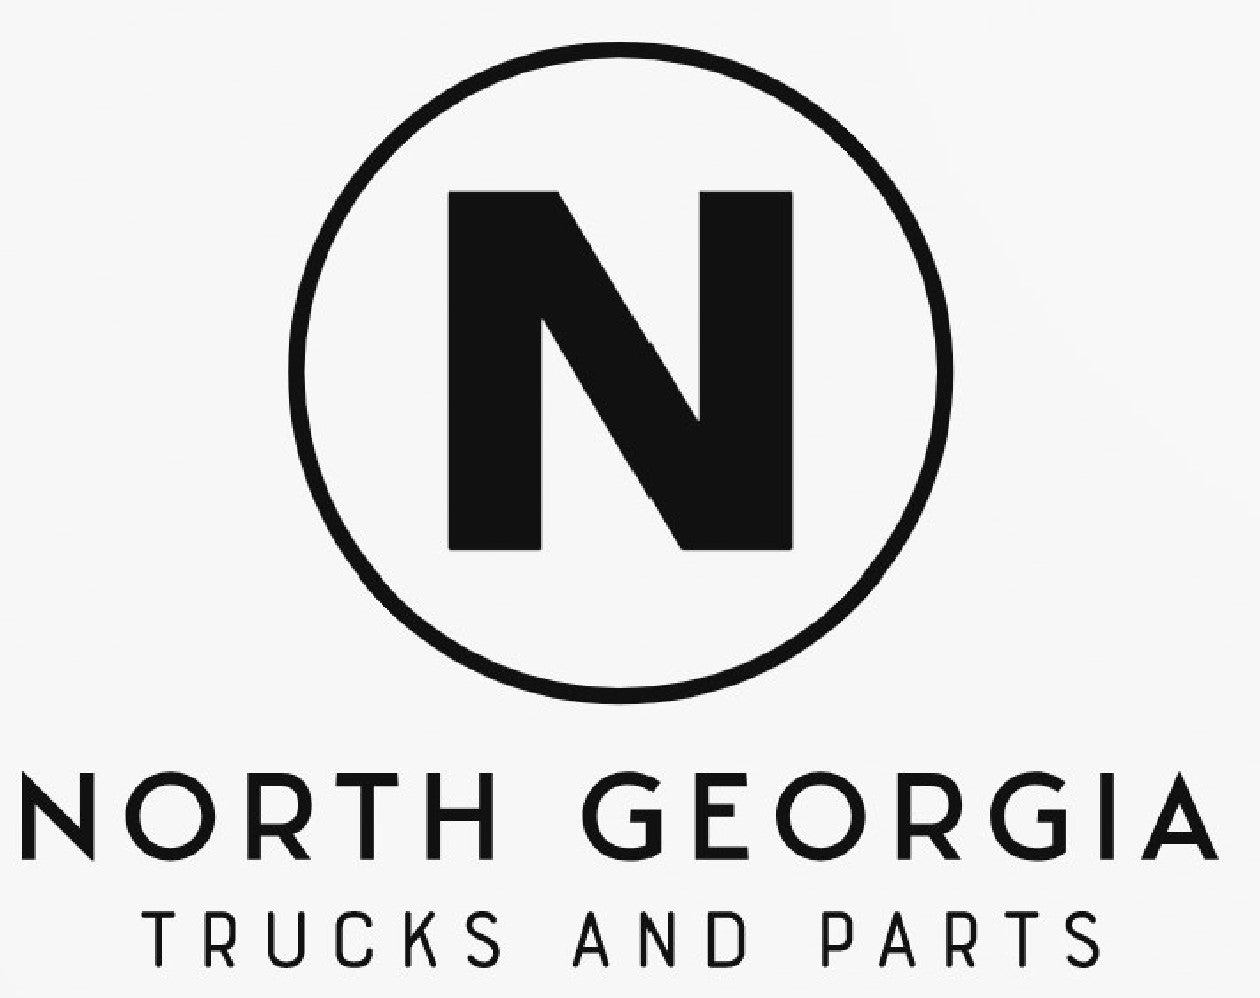 Horton Truck Parts - North Georgia Trucks and Parts